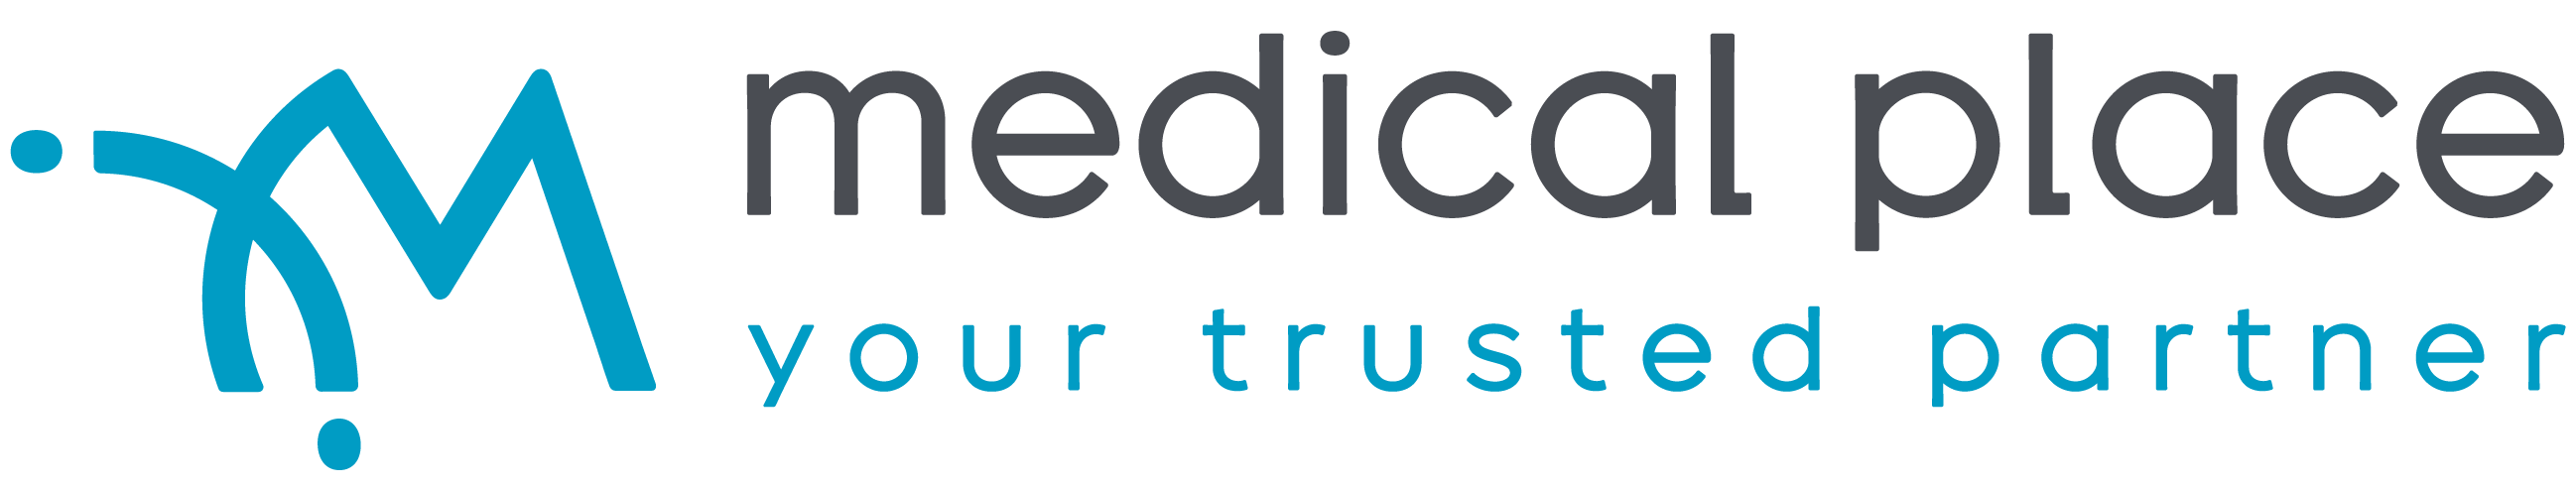 medical-place-logo